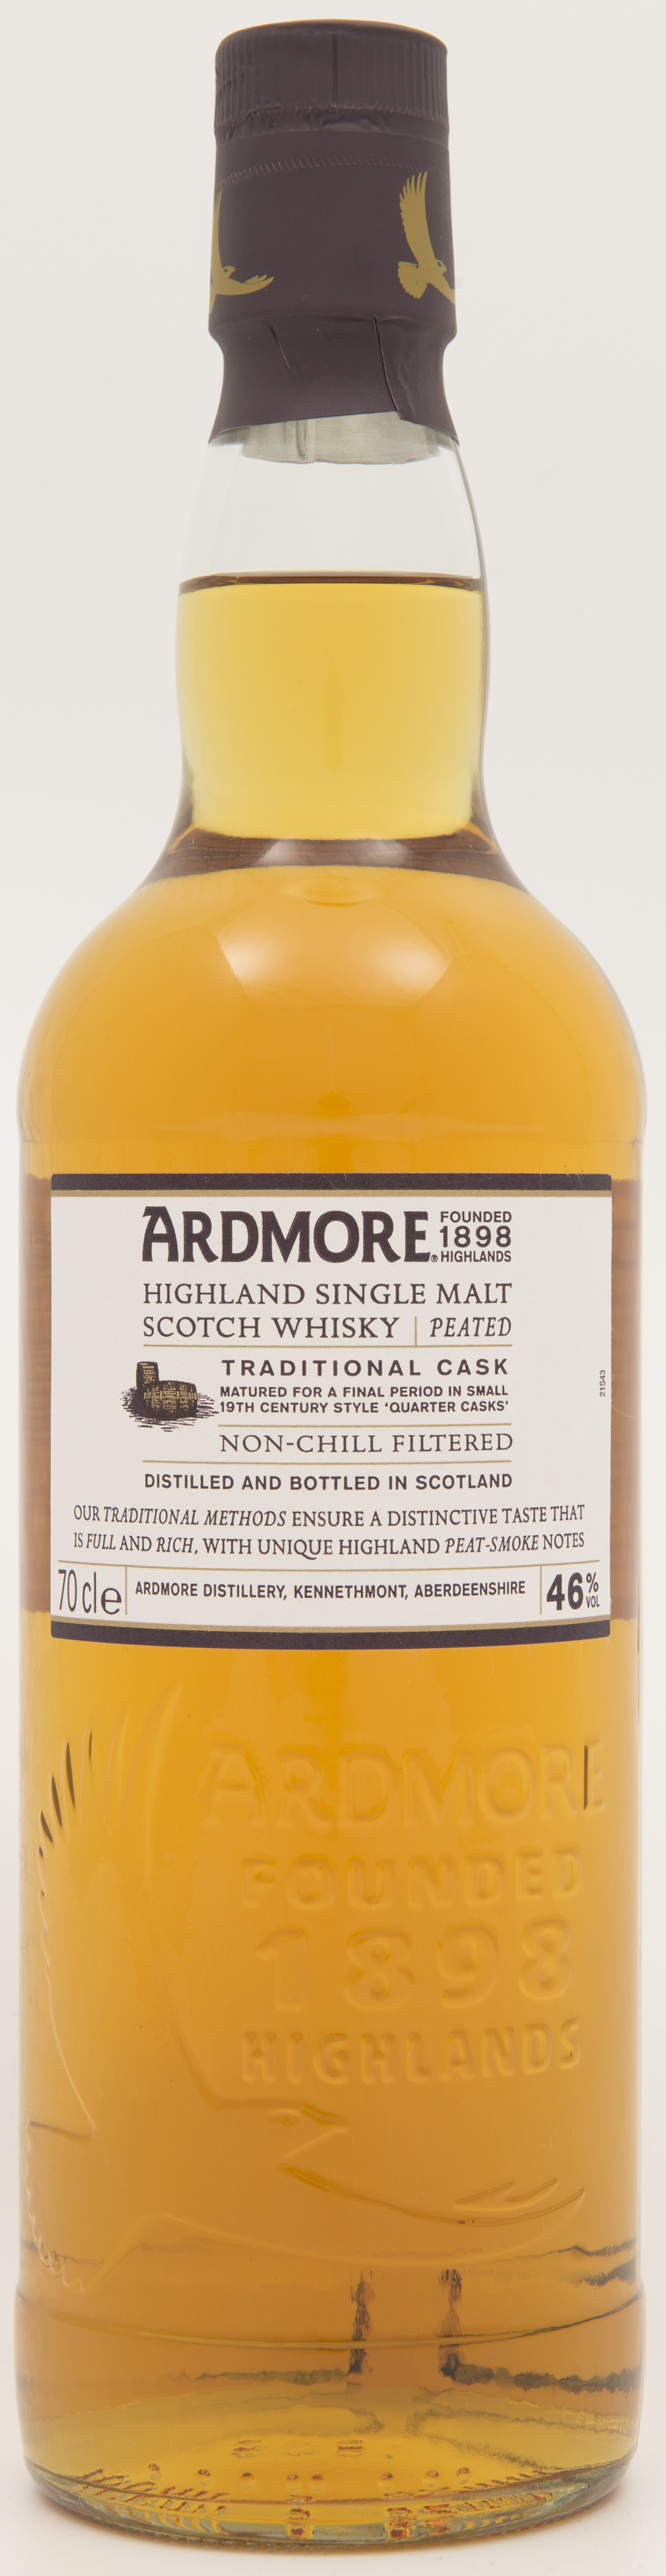 Billede: DSC_4842 - Ardmore Traditional Cask - bottle front.jpg